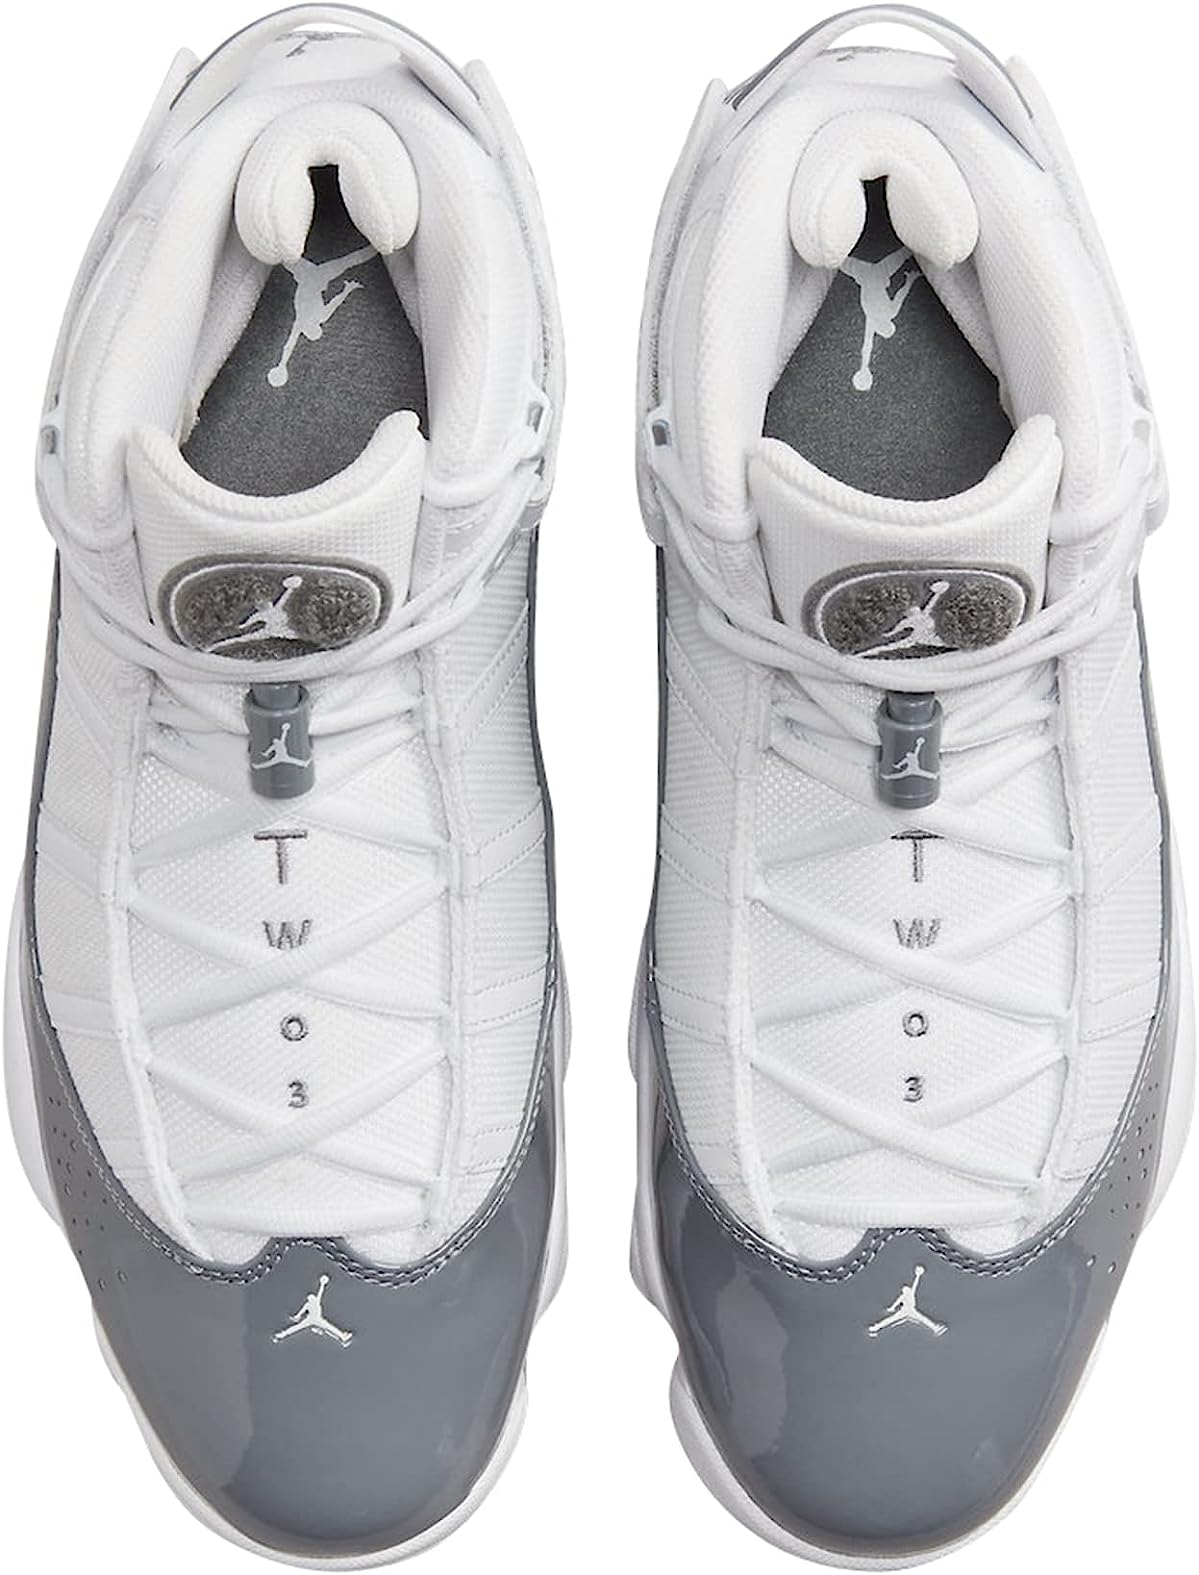 Jordan Mens 6 Rings Basketball Shoes